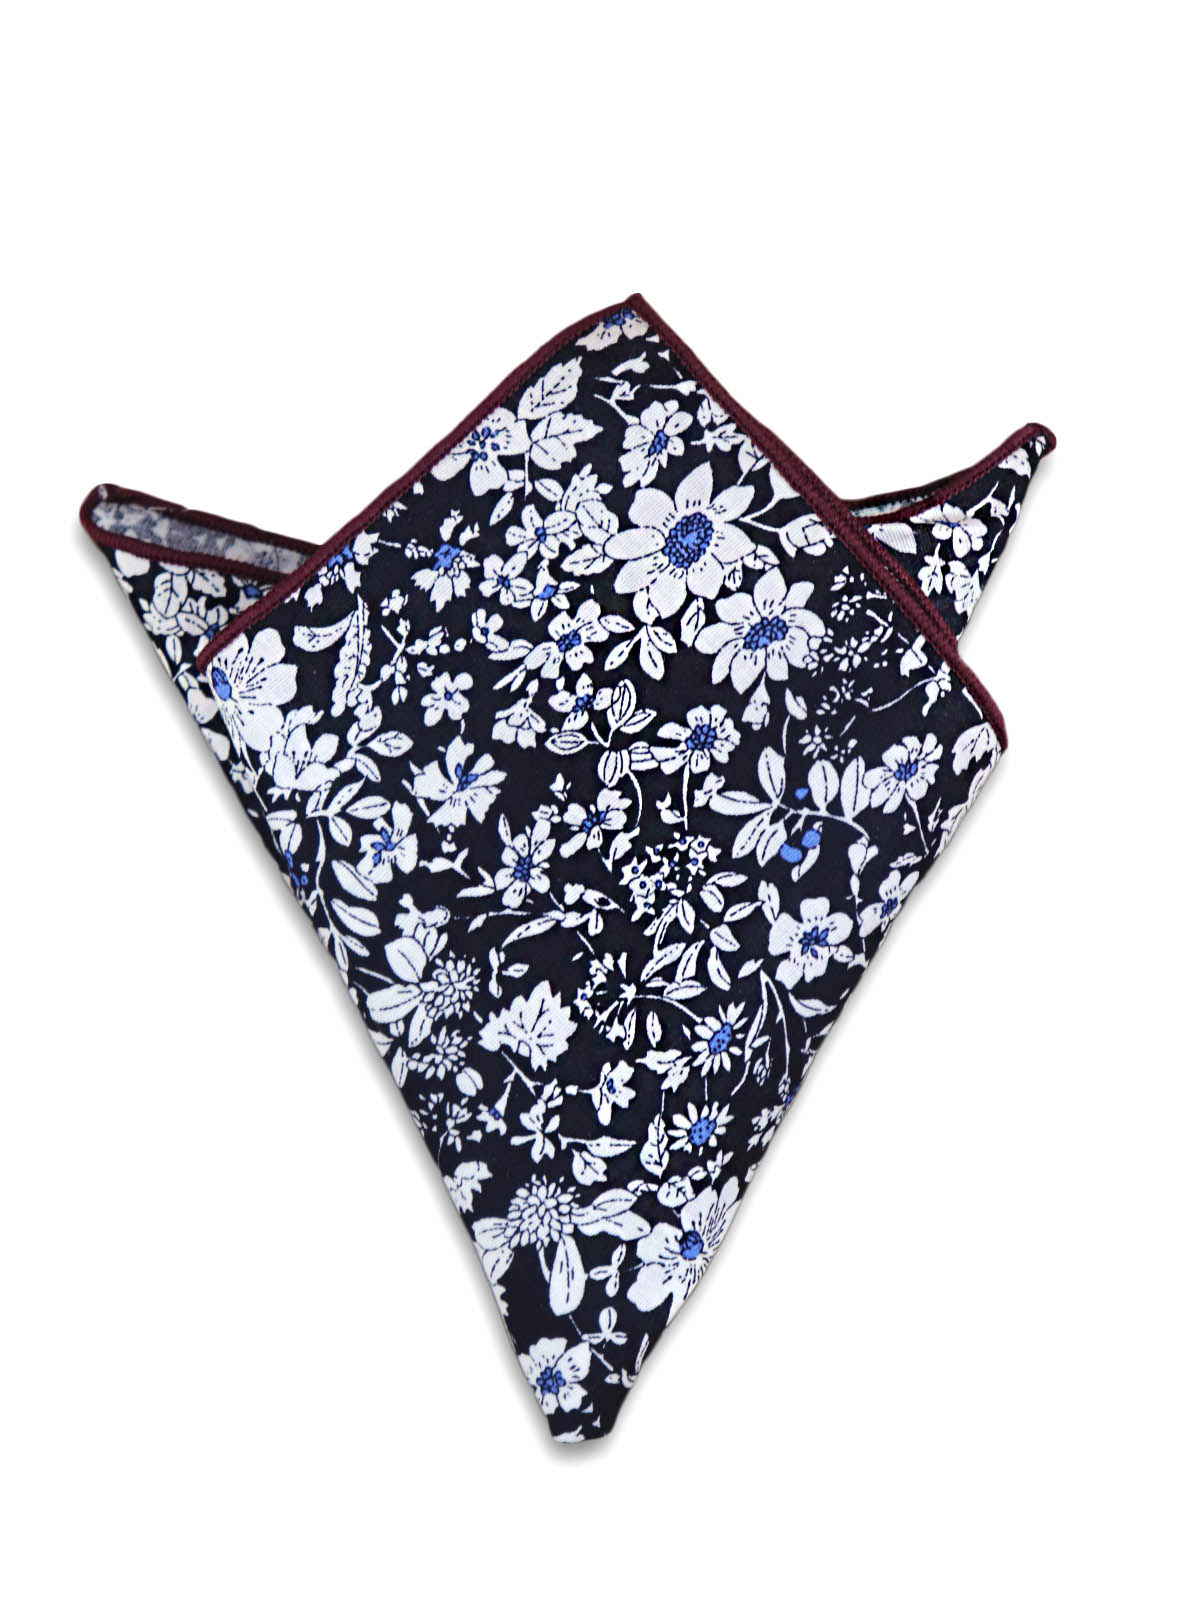 Нагрудный платок черный с цветами описание: Материал - Хлопок, Размеры - 24 см х 24 см, Страна производства - Турция;